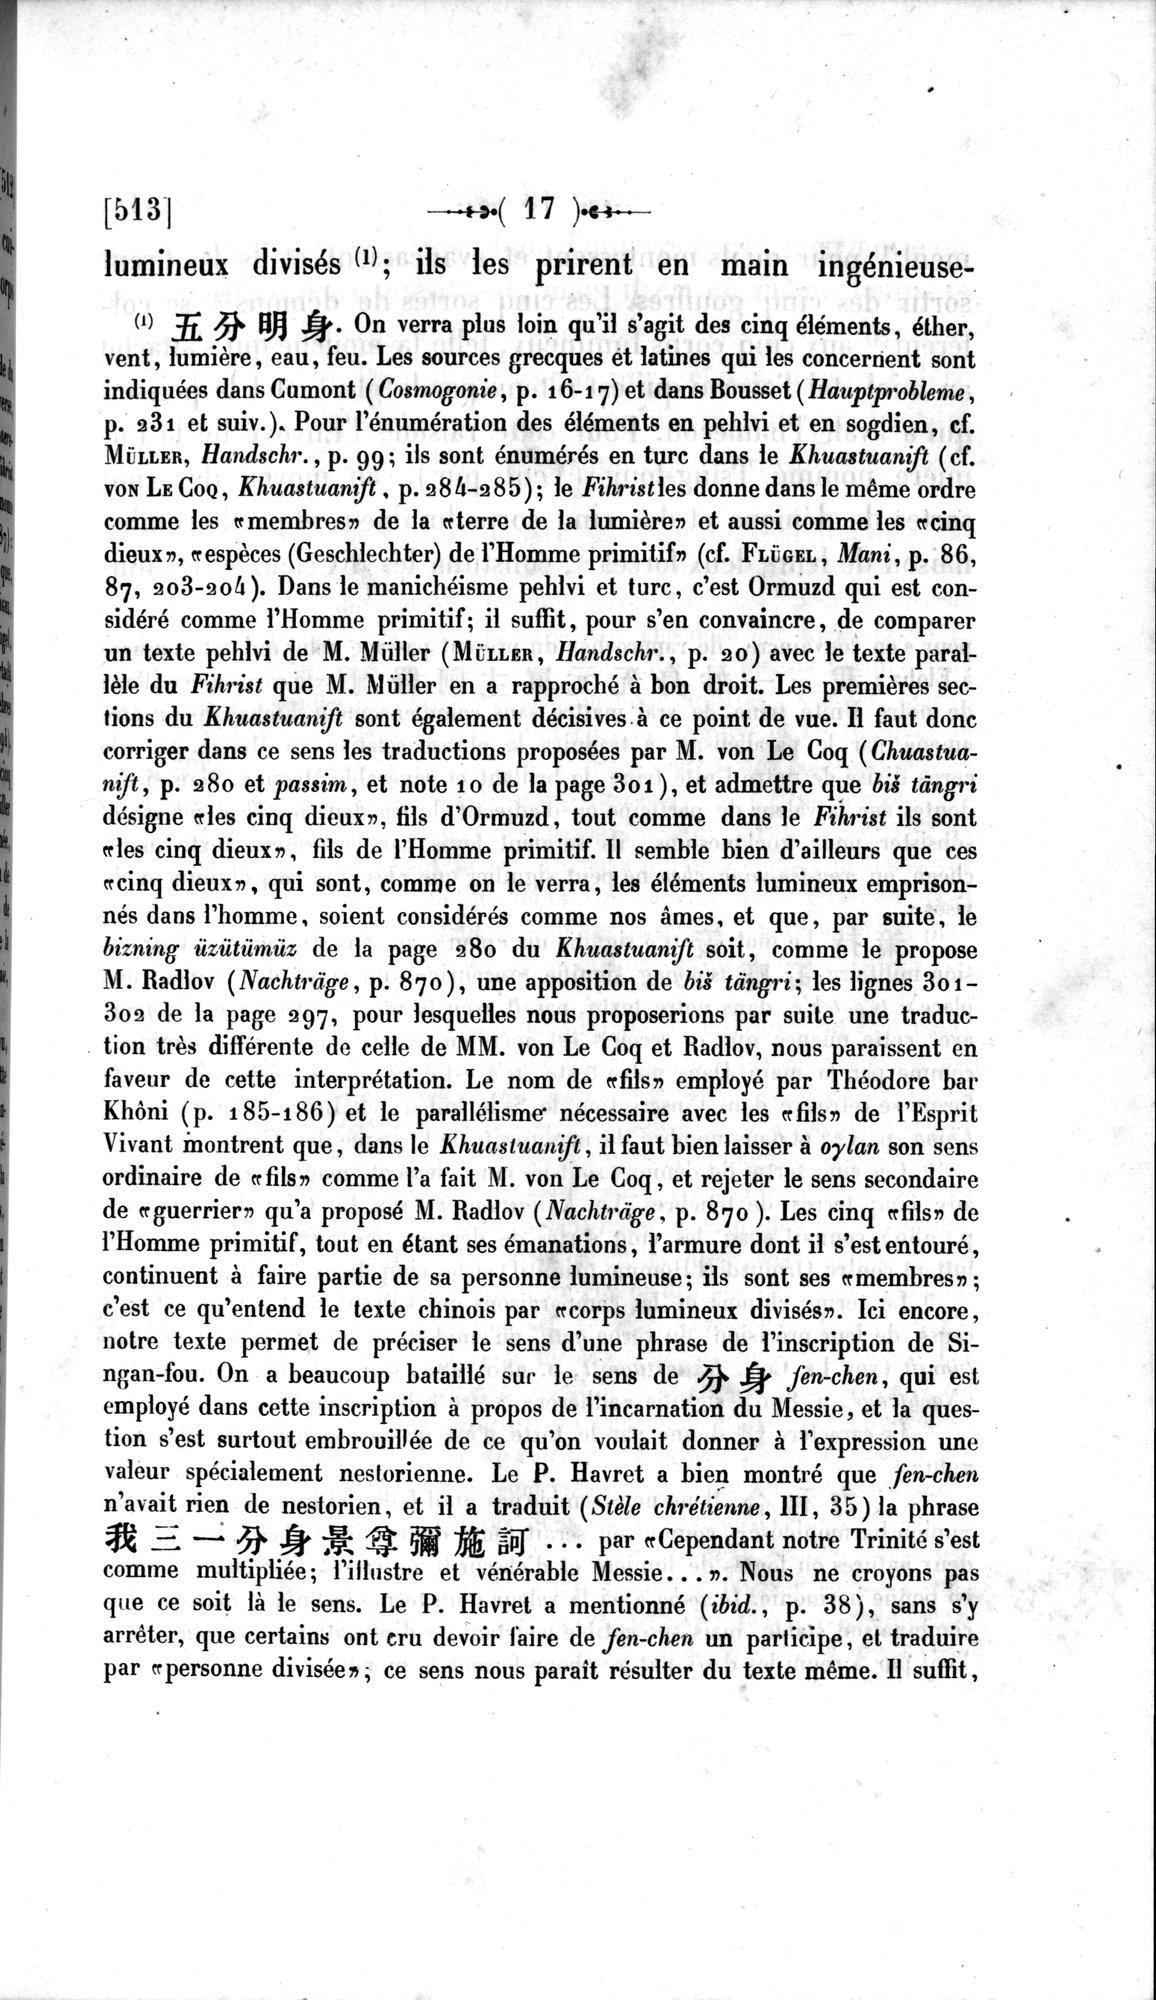 Un traité manichéen retrouvé en Chine : vol.1 / Page 27 (Grayscale High Resolution Image)